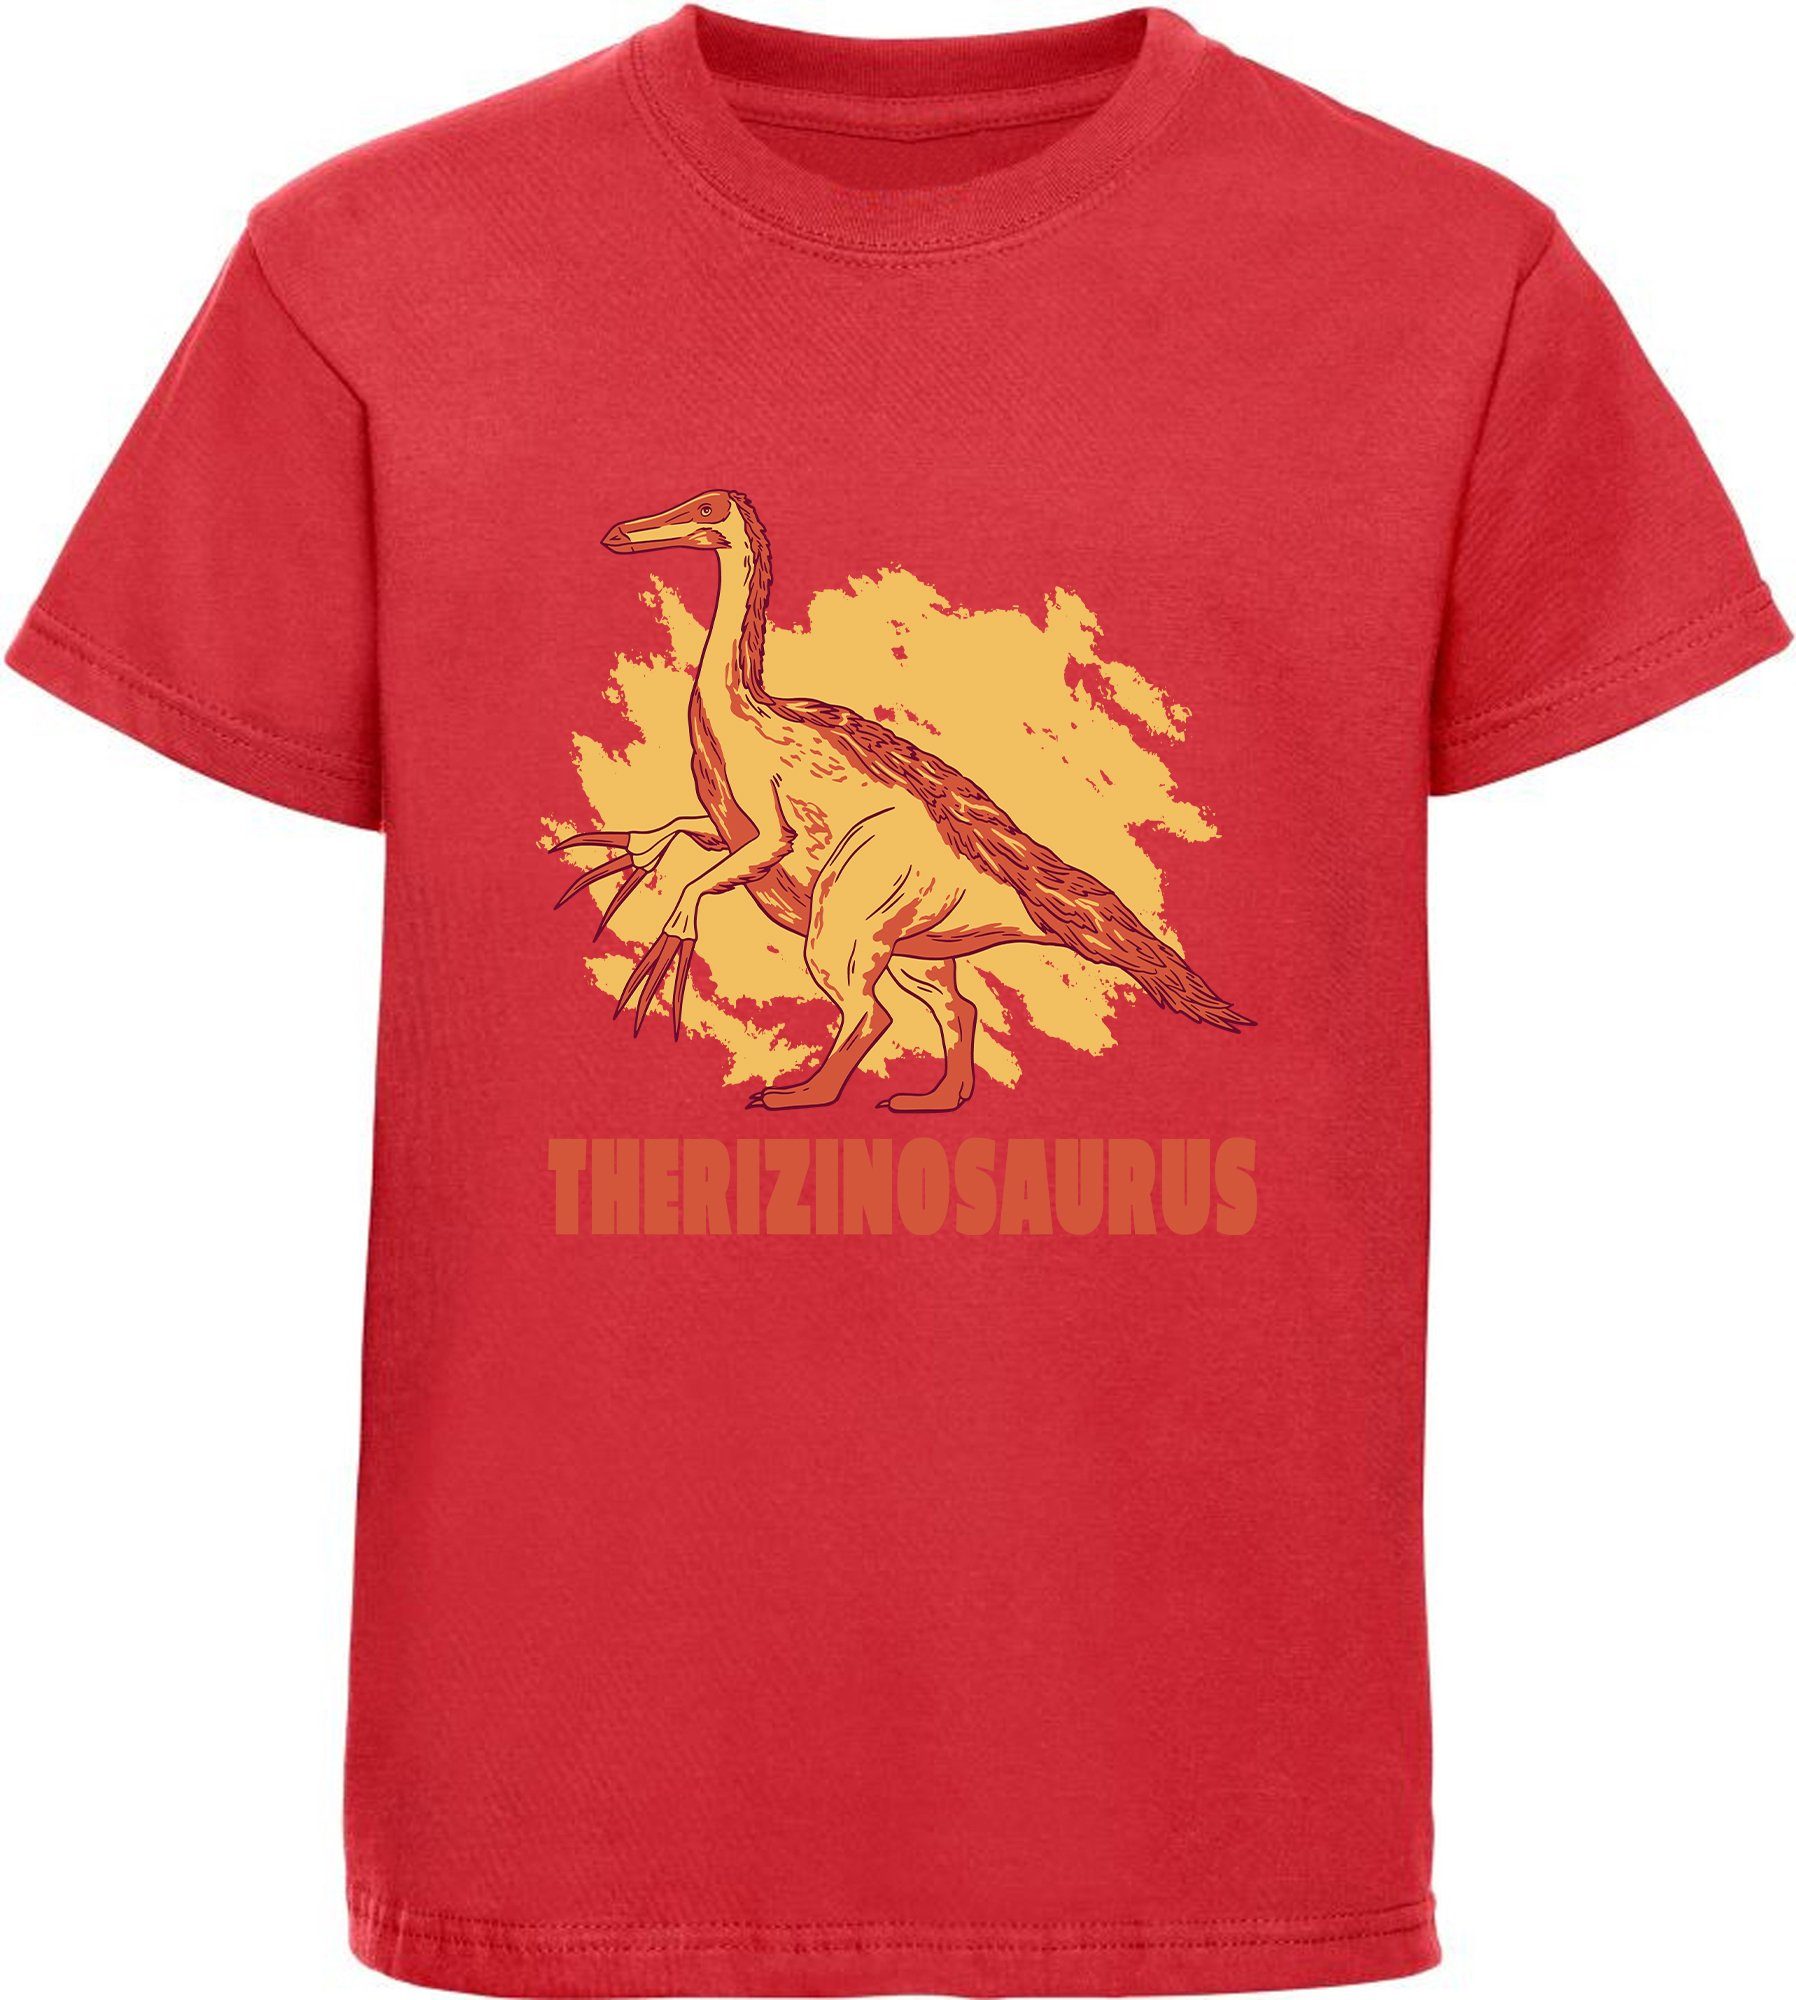 i87 Baumwollshirt MyDesign24 schwarz, blau, rot, mit mit bedrucktes T-Shirt Print-Shirt Dino, Kinder Therizinosaurus weiß,